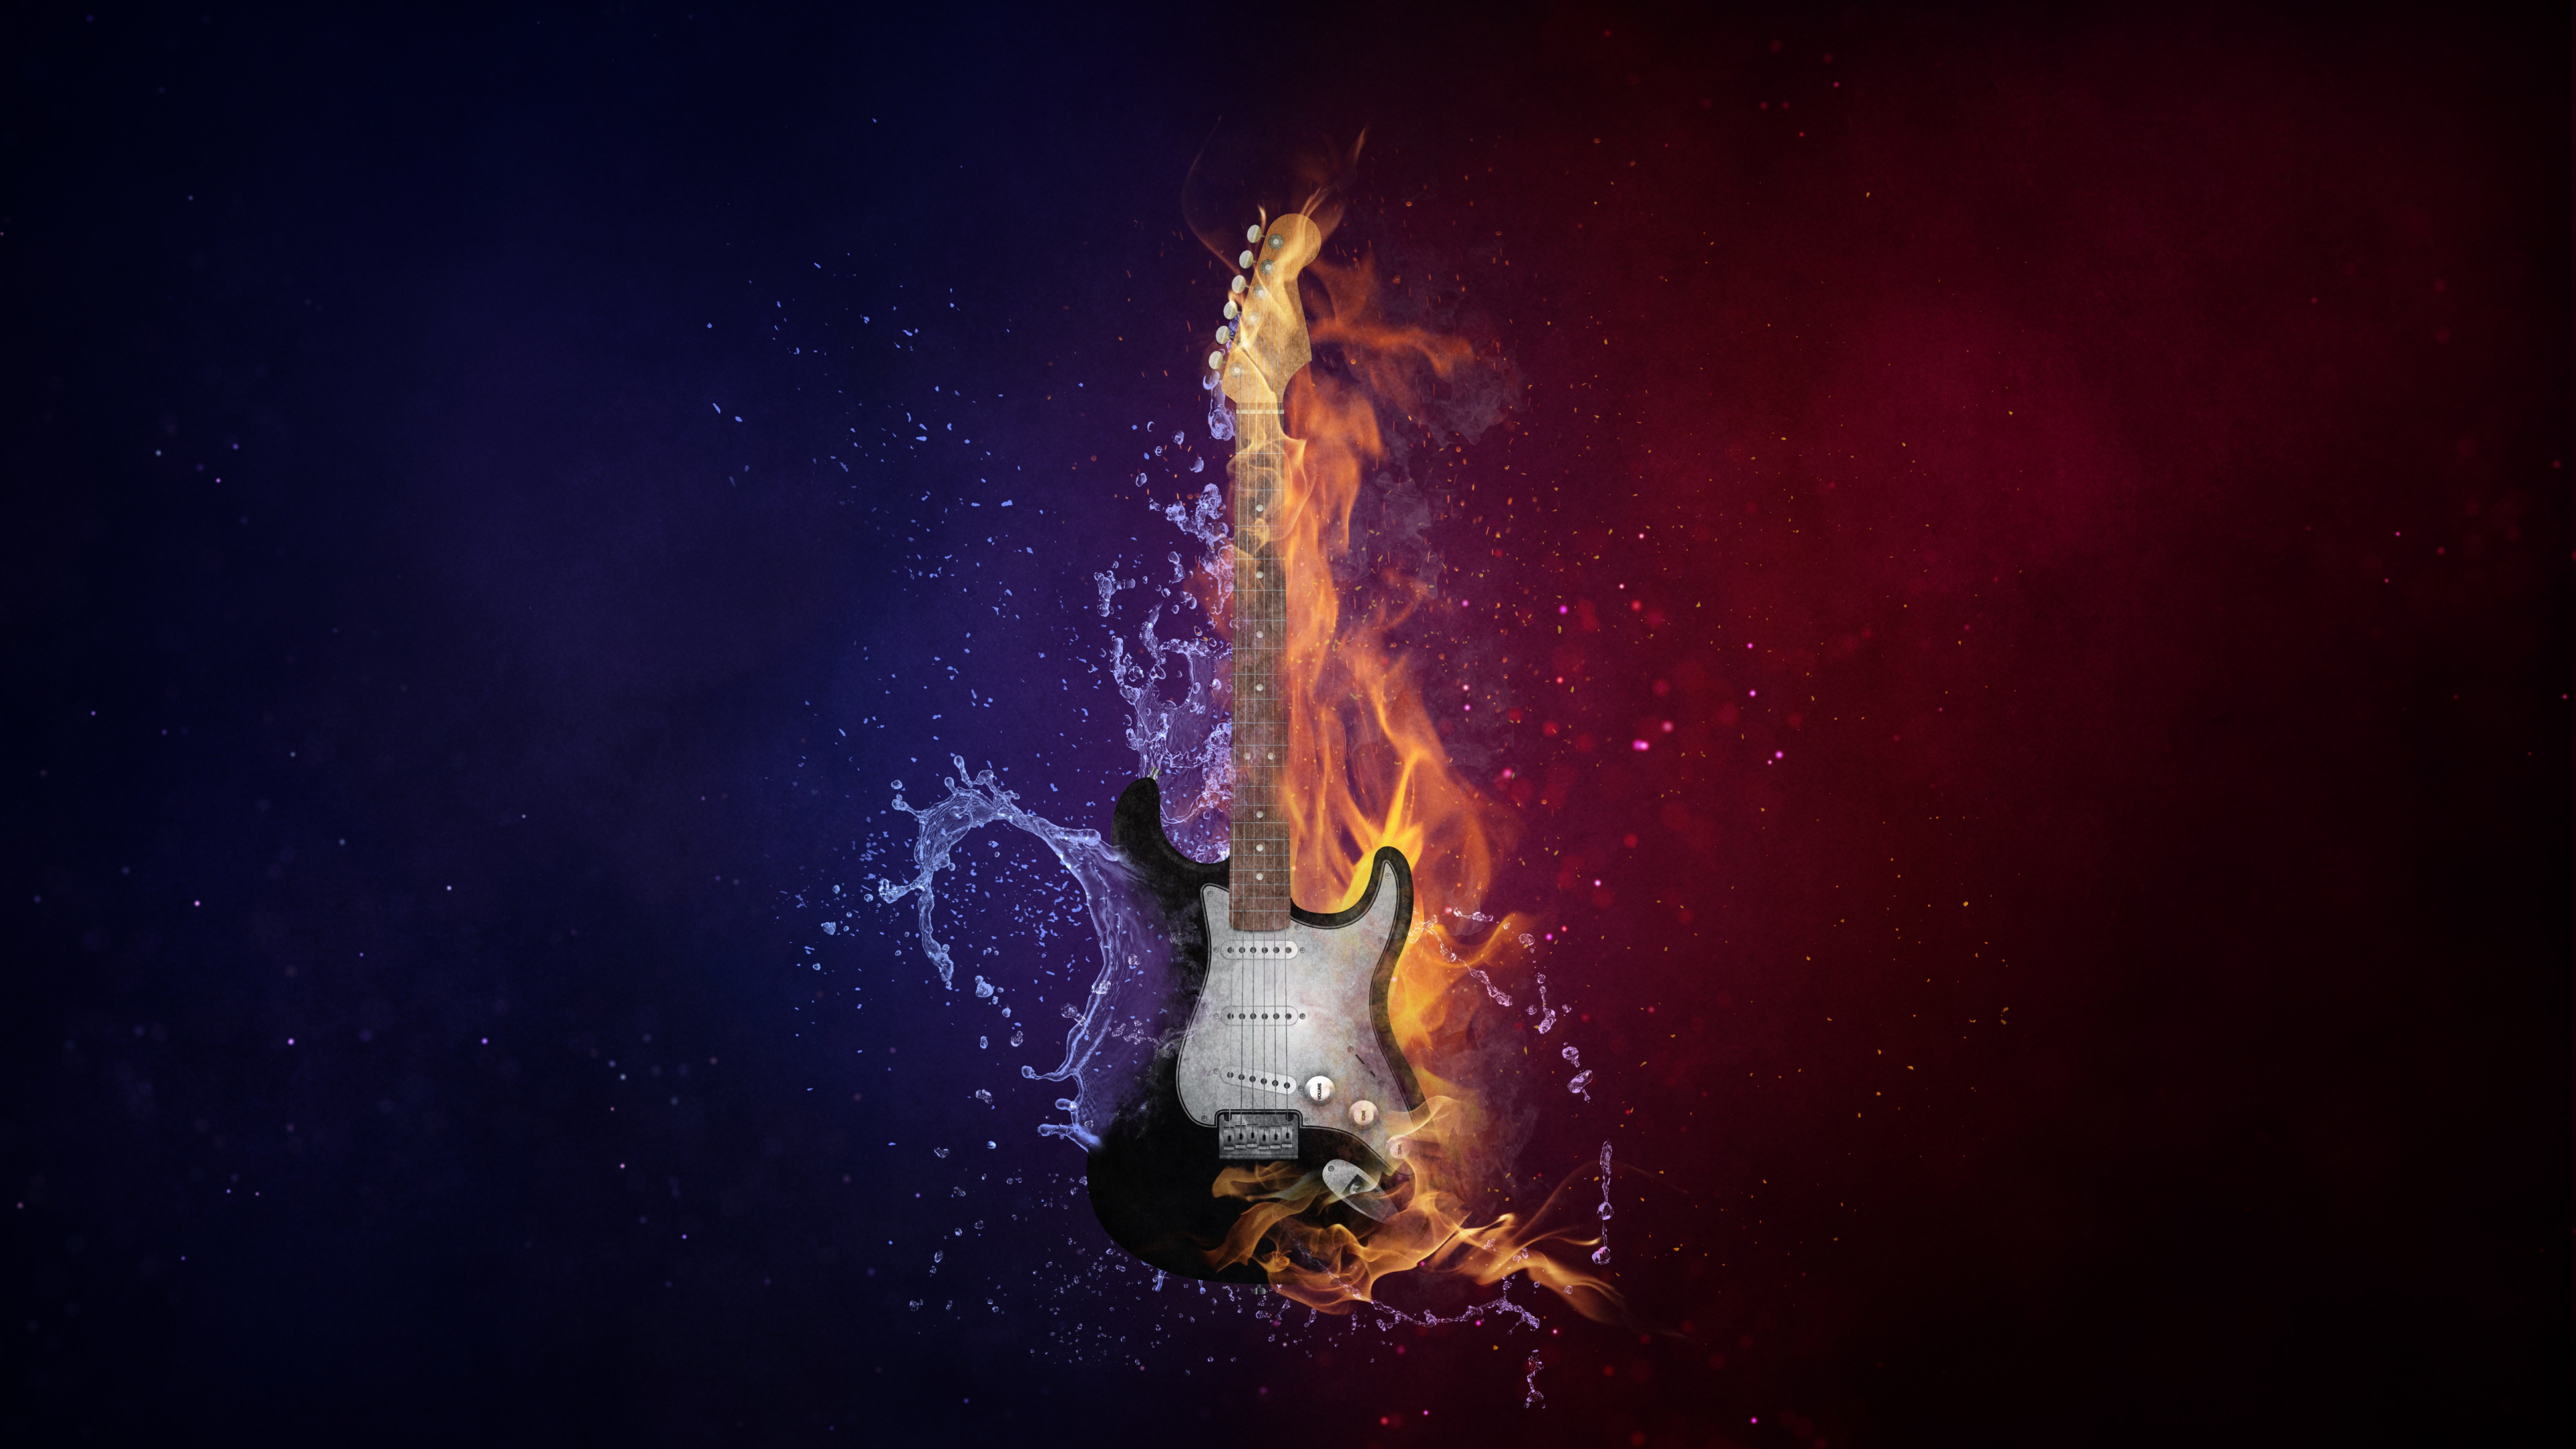 Guitarra, Calor, Llama, Fuego, Ambiente. Wallpaper in 3840x2160 Resolution